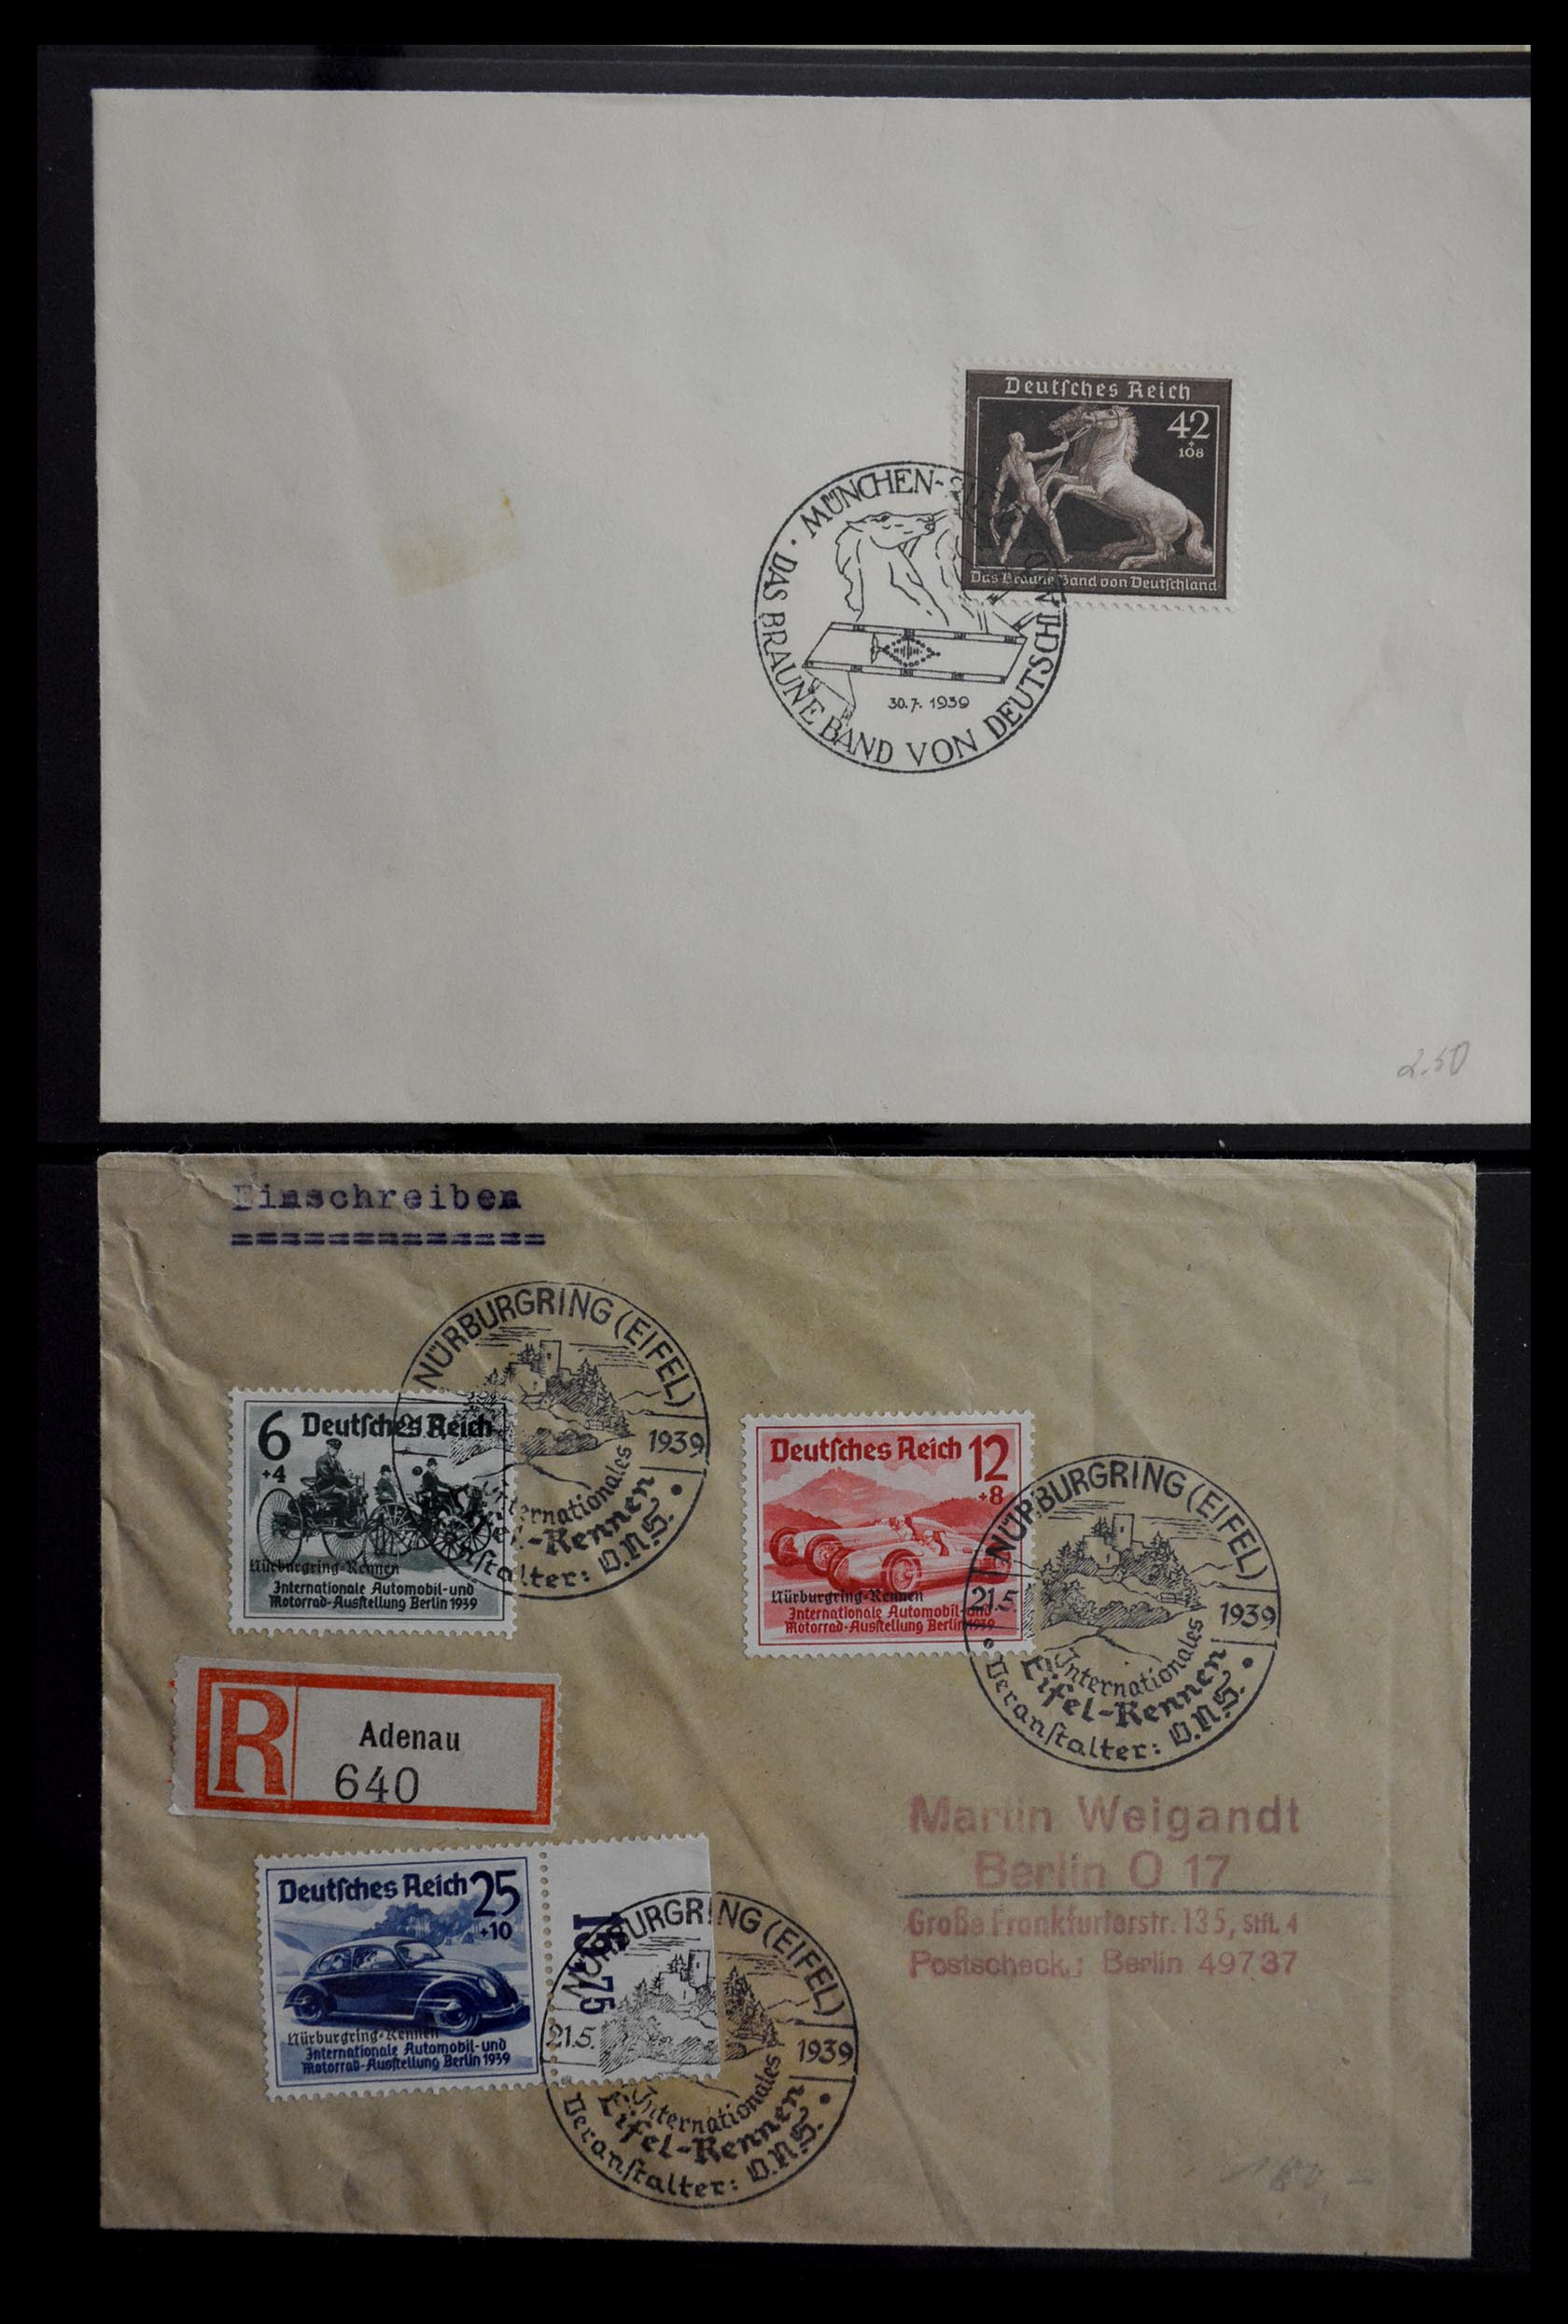 29382 003 - 29382 Duitsland brieven en FDC's 1936-1965.